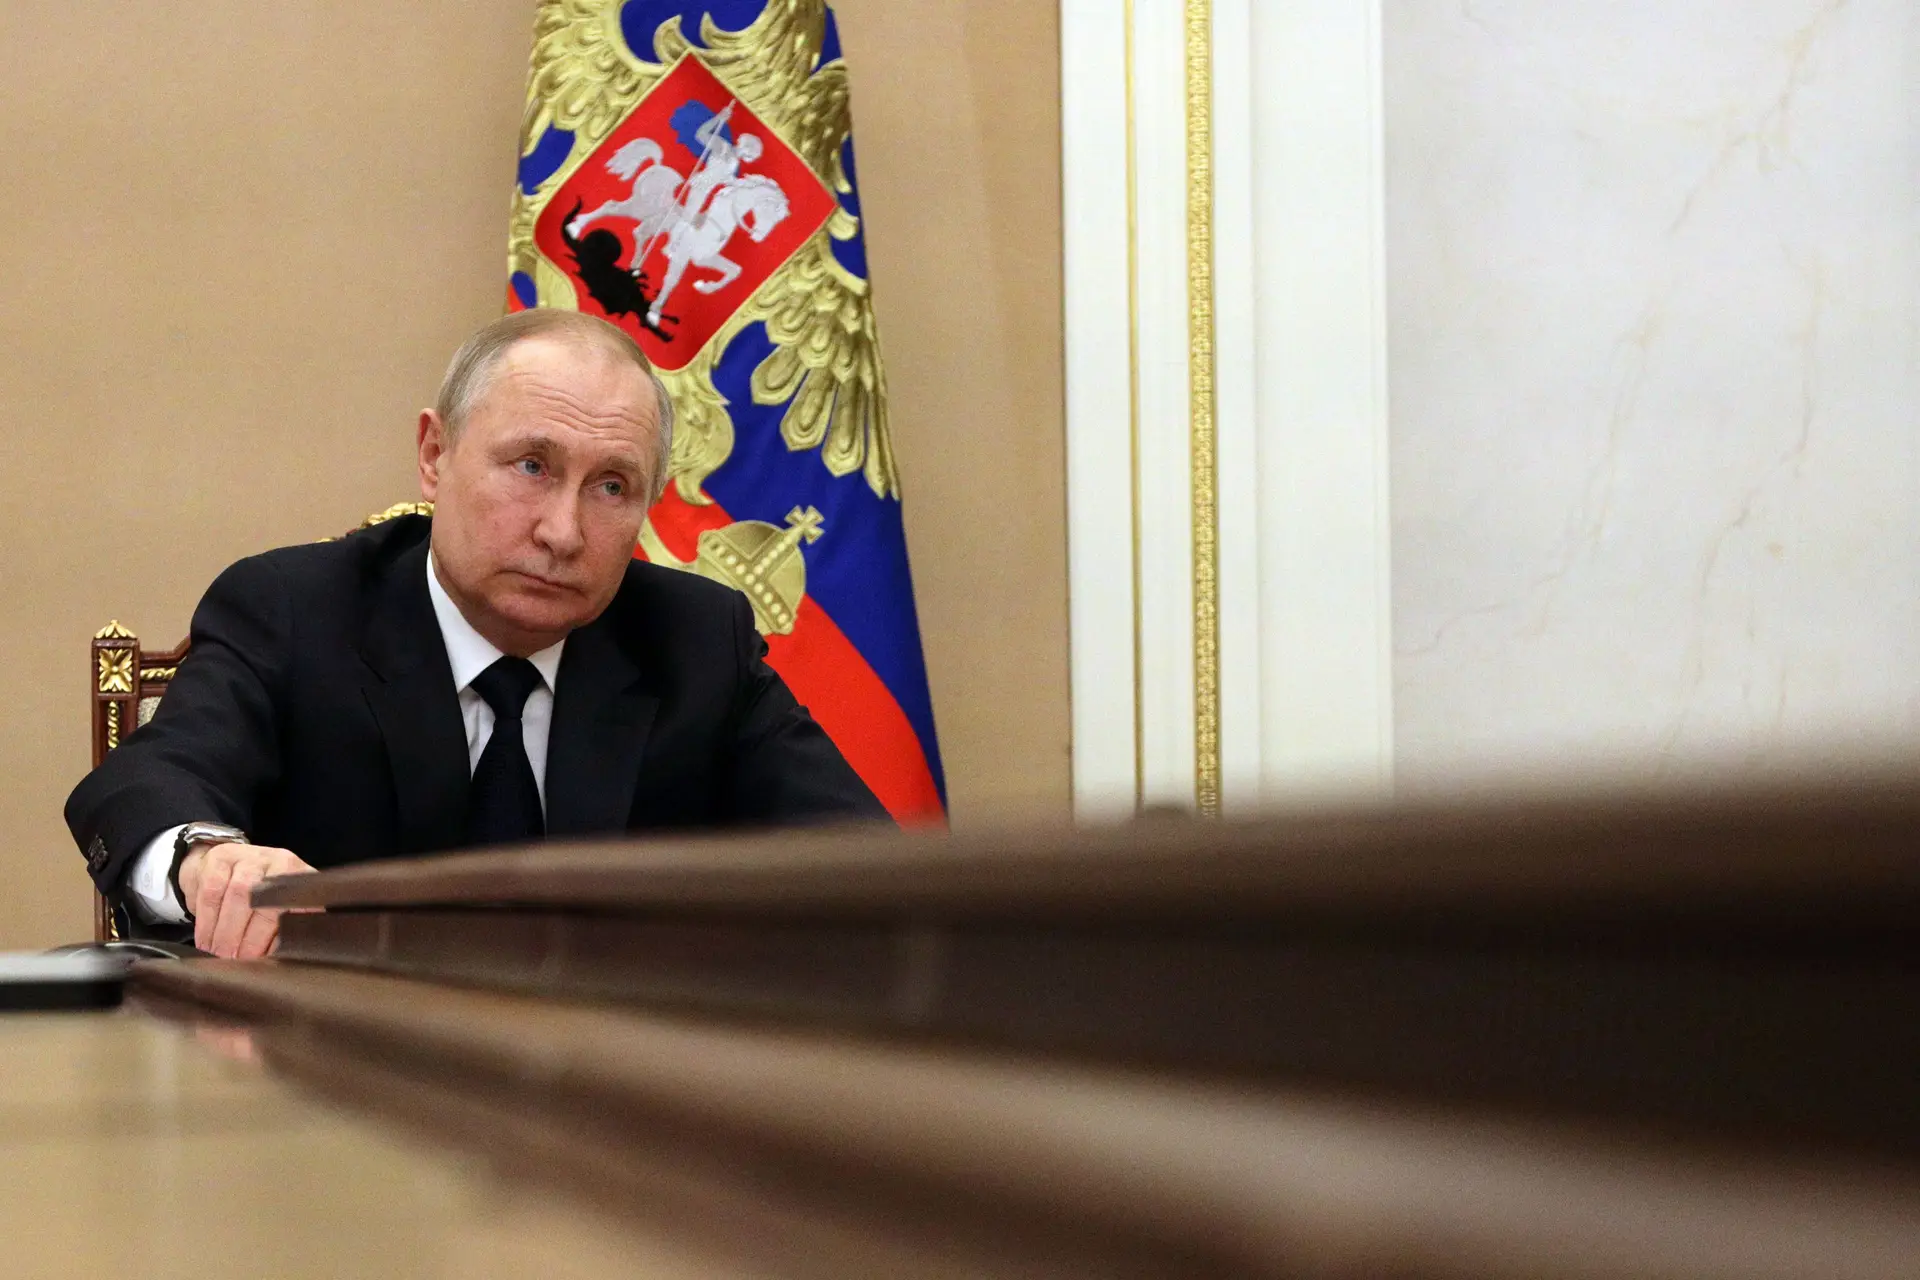 Exportação de fertilizantes russos: Putin acusa Europa de "egoísmo"